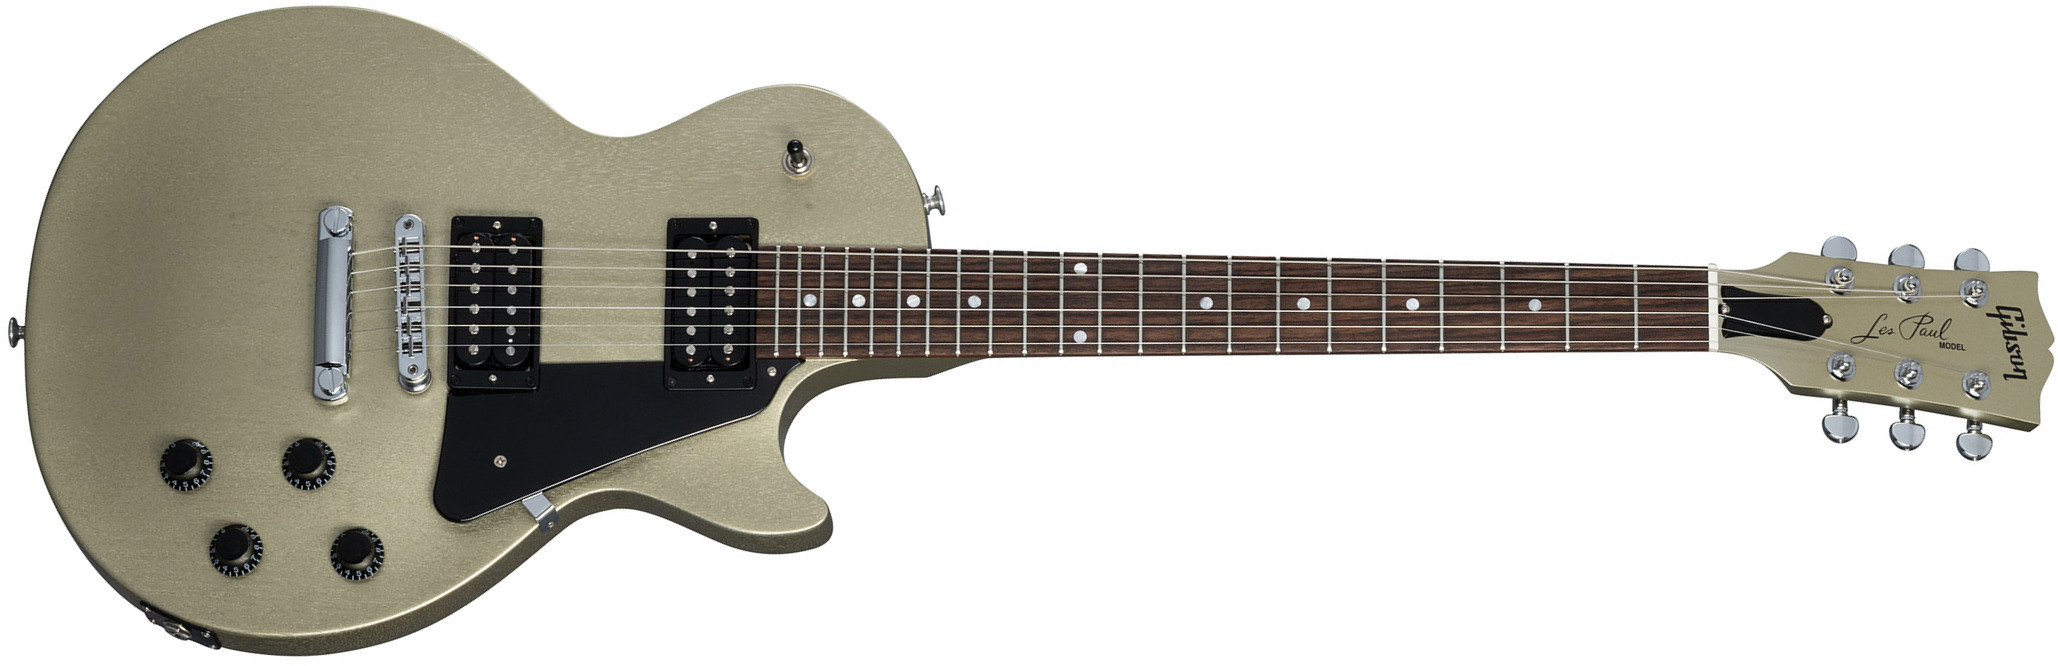 Gibson Les Paul Modern Lite 2h Ht Rw - Gold Mist Satin - Enkel gesneden elektrische gitaar - Main picture